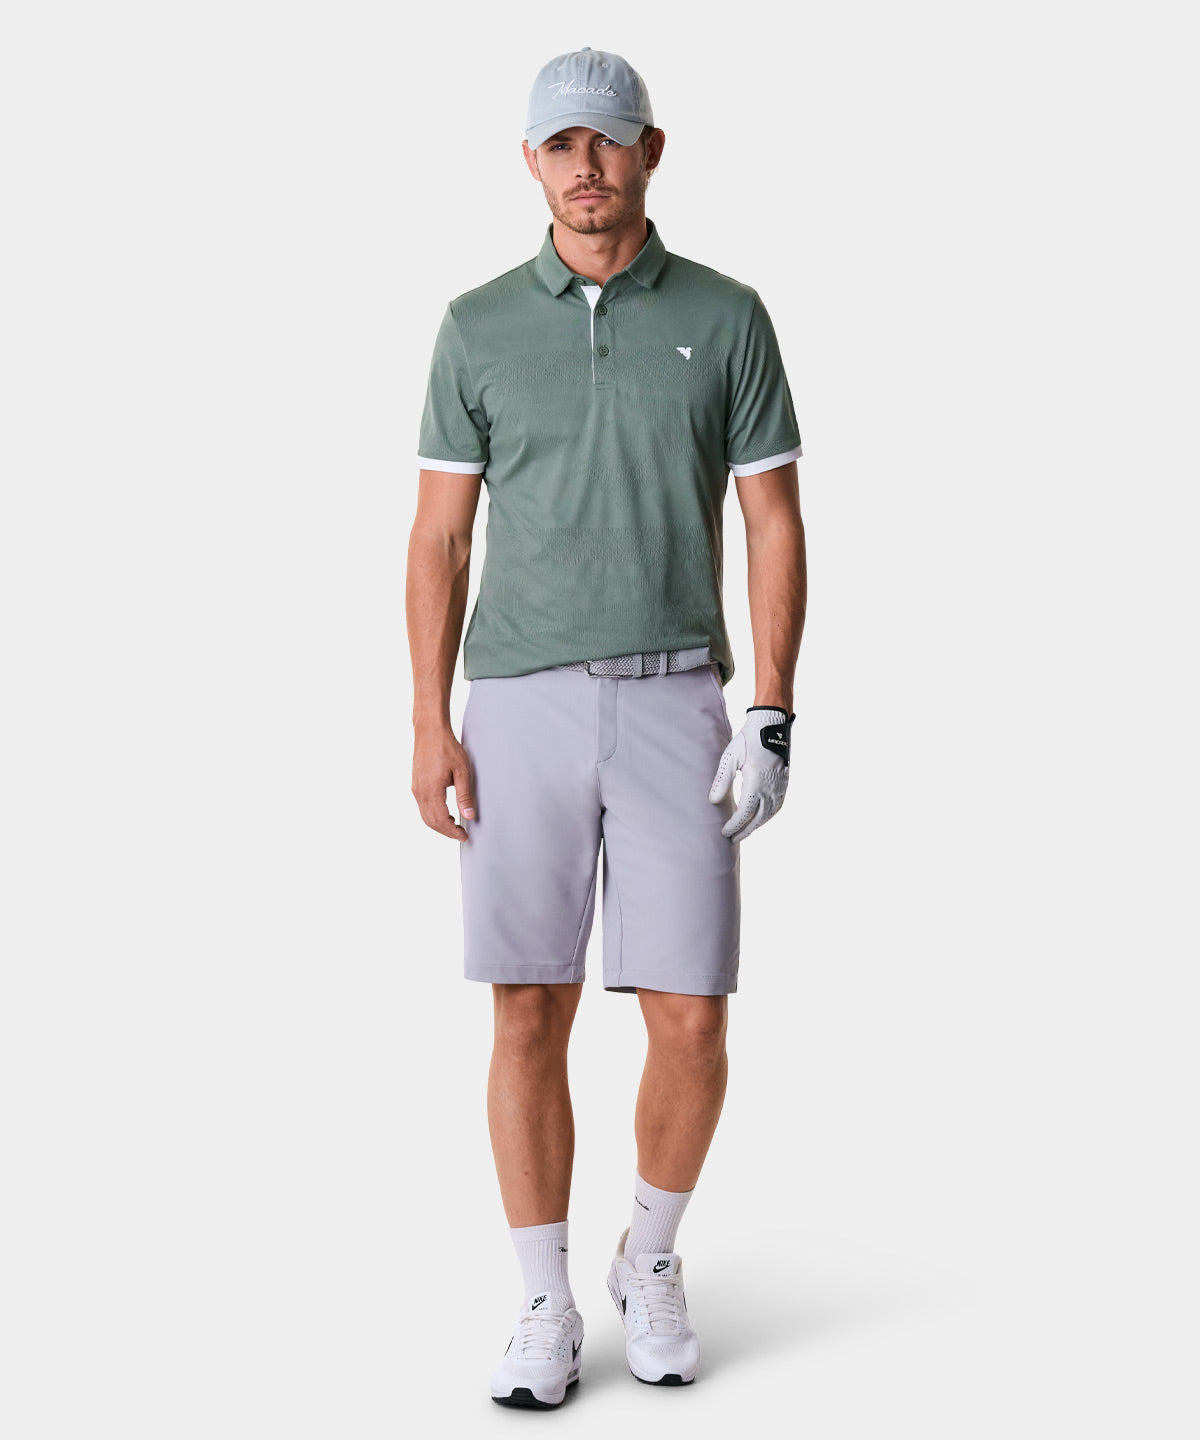 Cole Green Performance Shirt Macade Golf